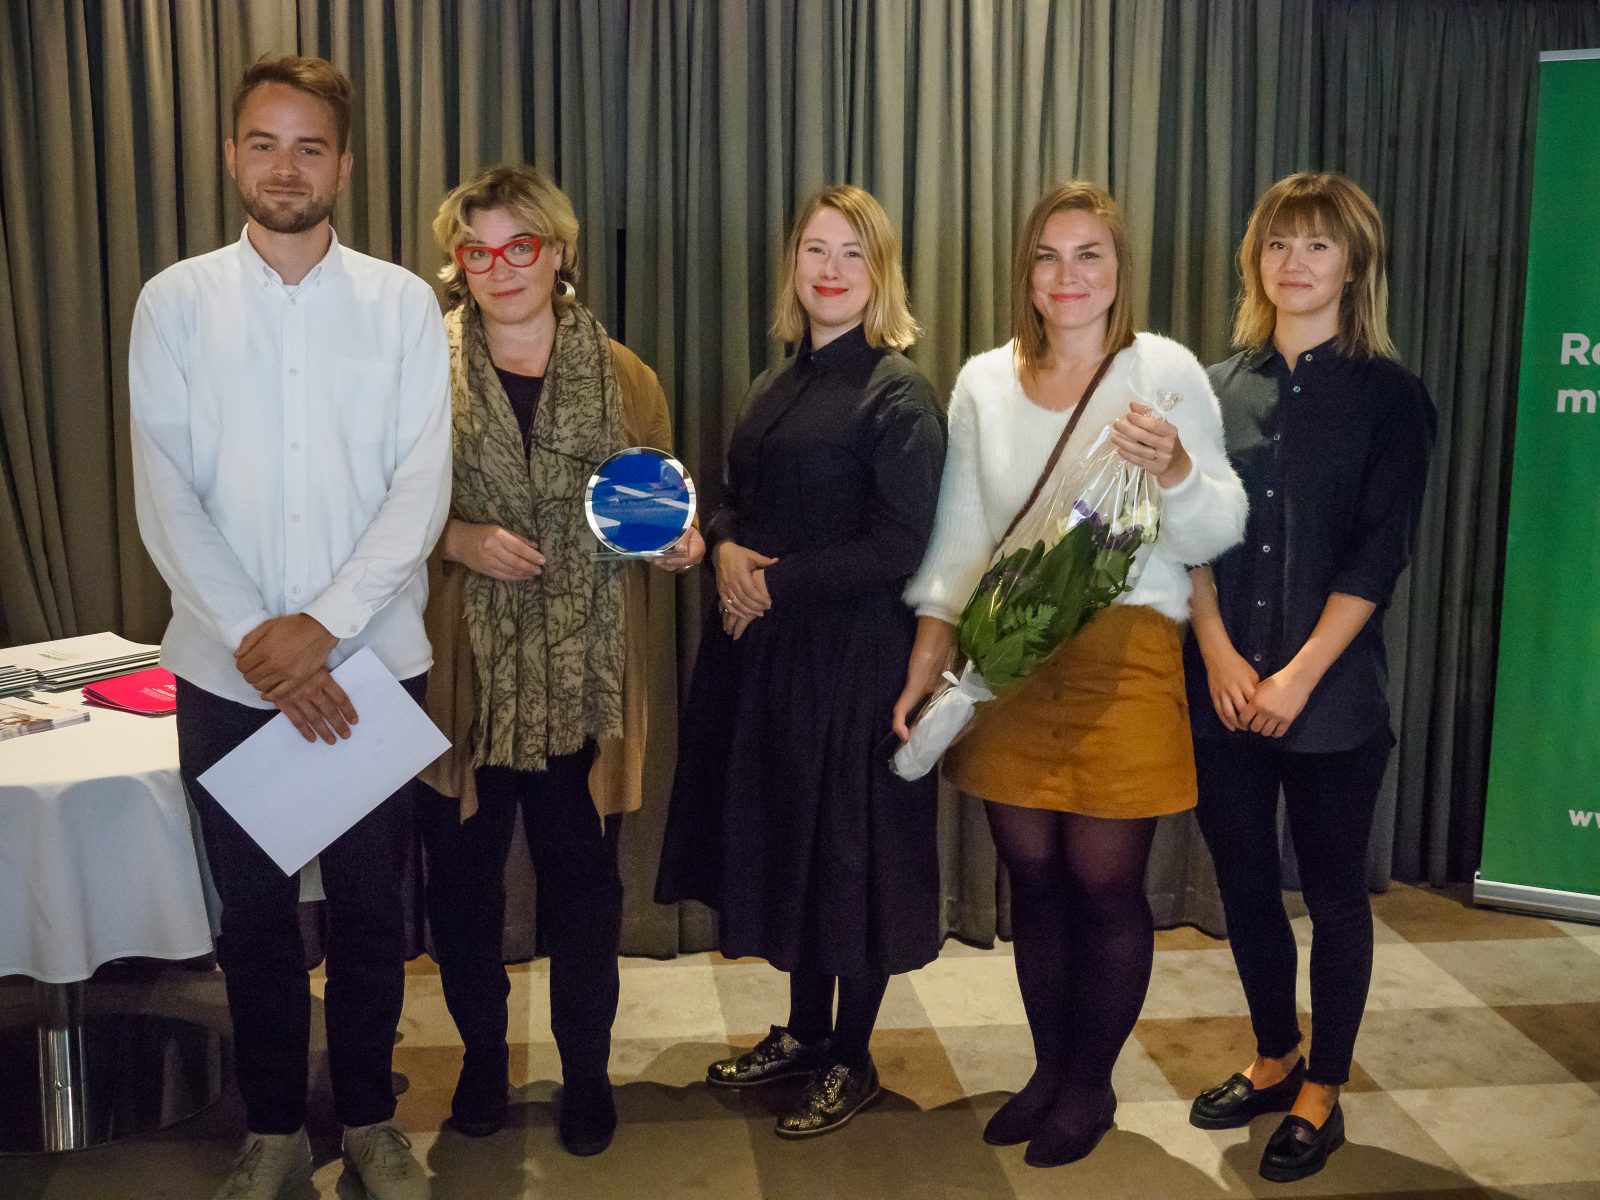 Palkintoa vastaanottamassa CMI:n Elina Lehtinen ja Suvi Tuuli sekä Milttonin Mikko Hakkarainen, Lauramaria Havu ja Hanna Lemmetti. 